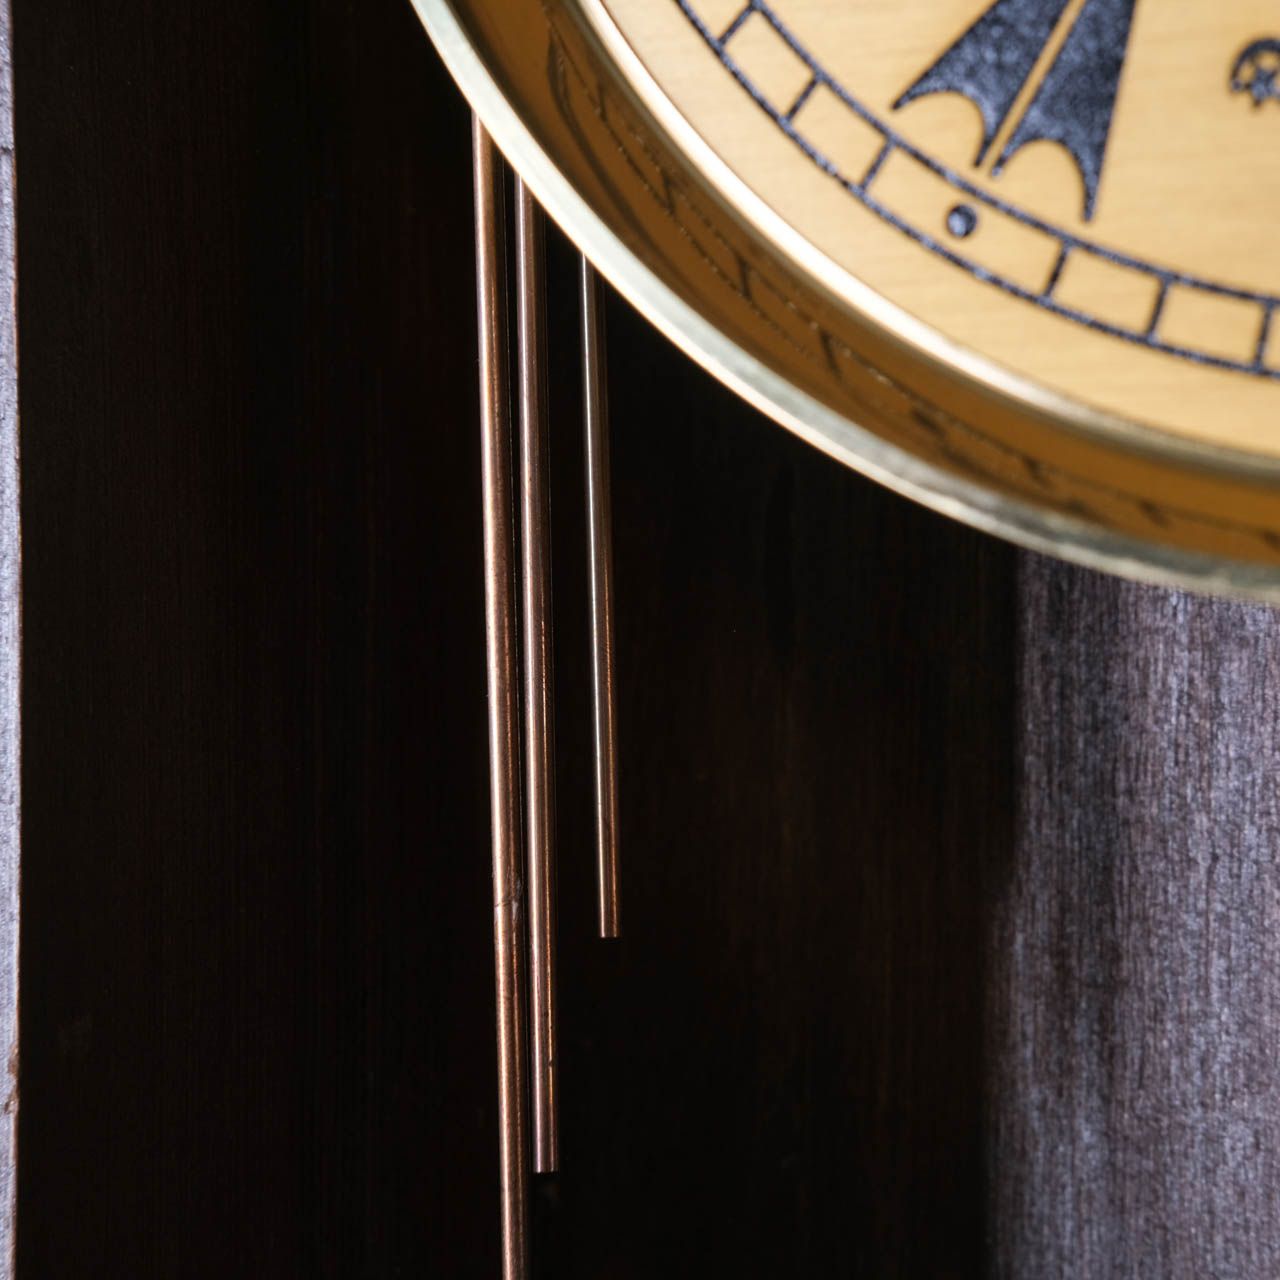 Antique Wall Clock,Antique wooden wall clock